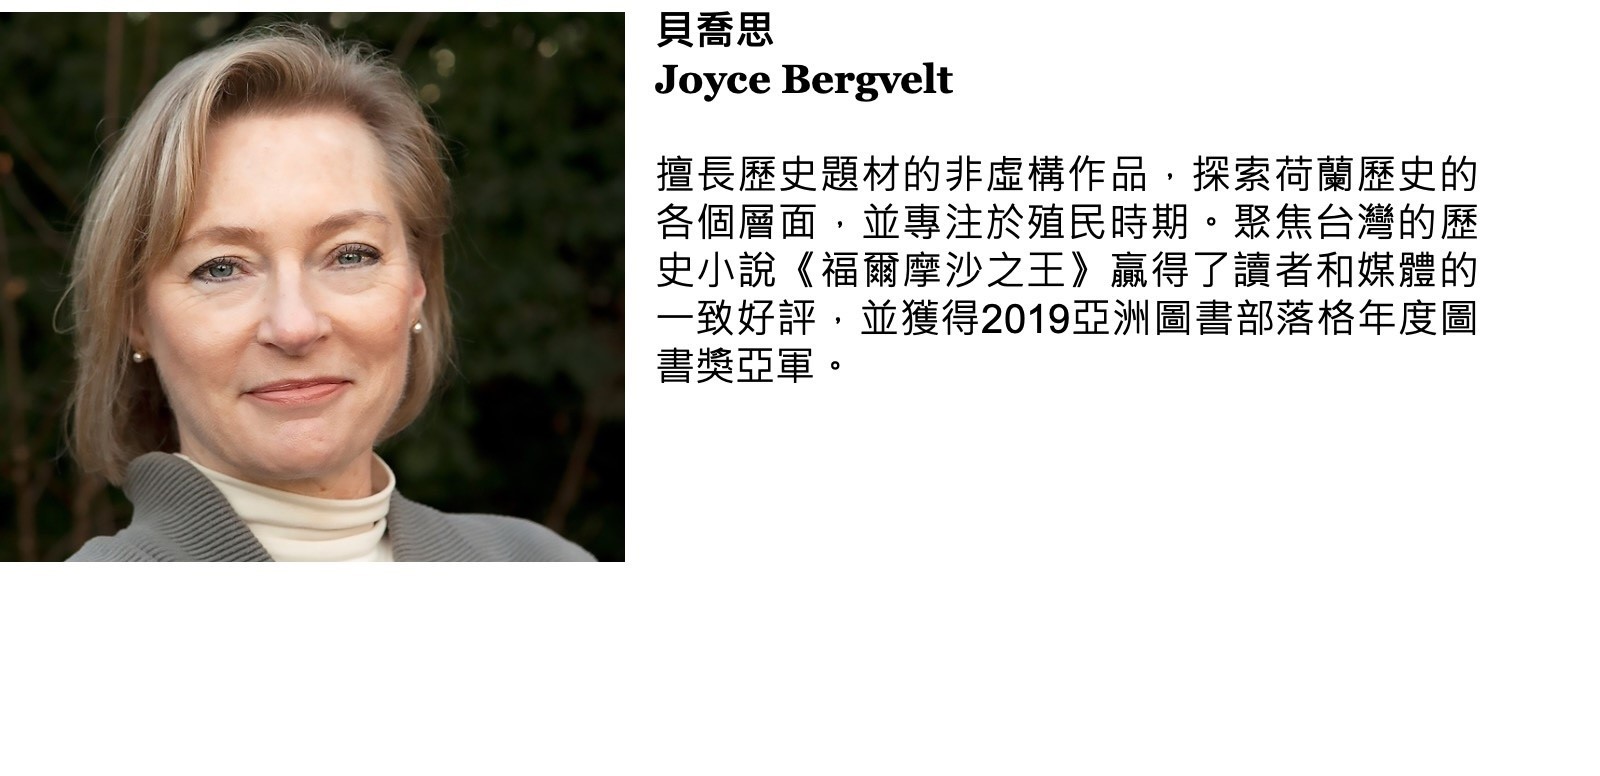 貝喬思 Joyce Bergvelt